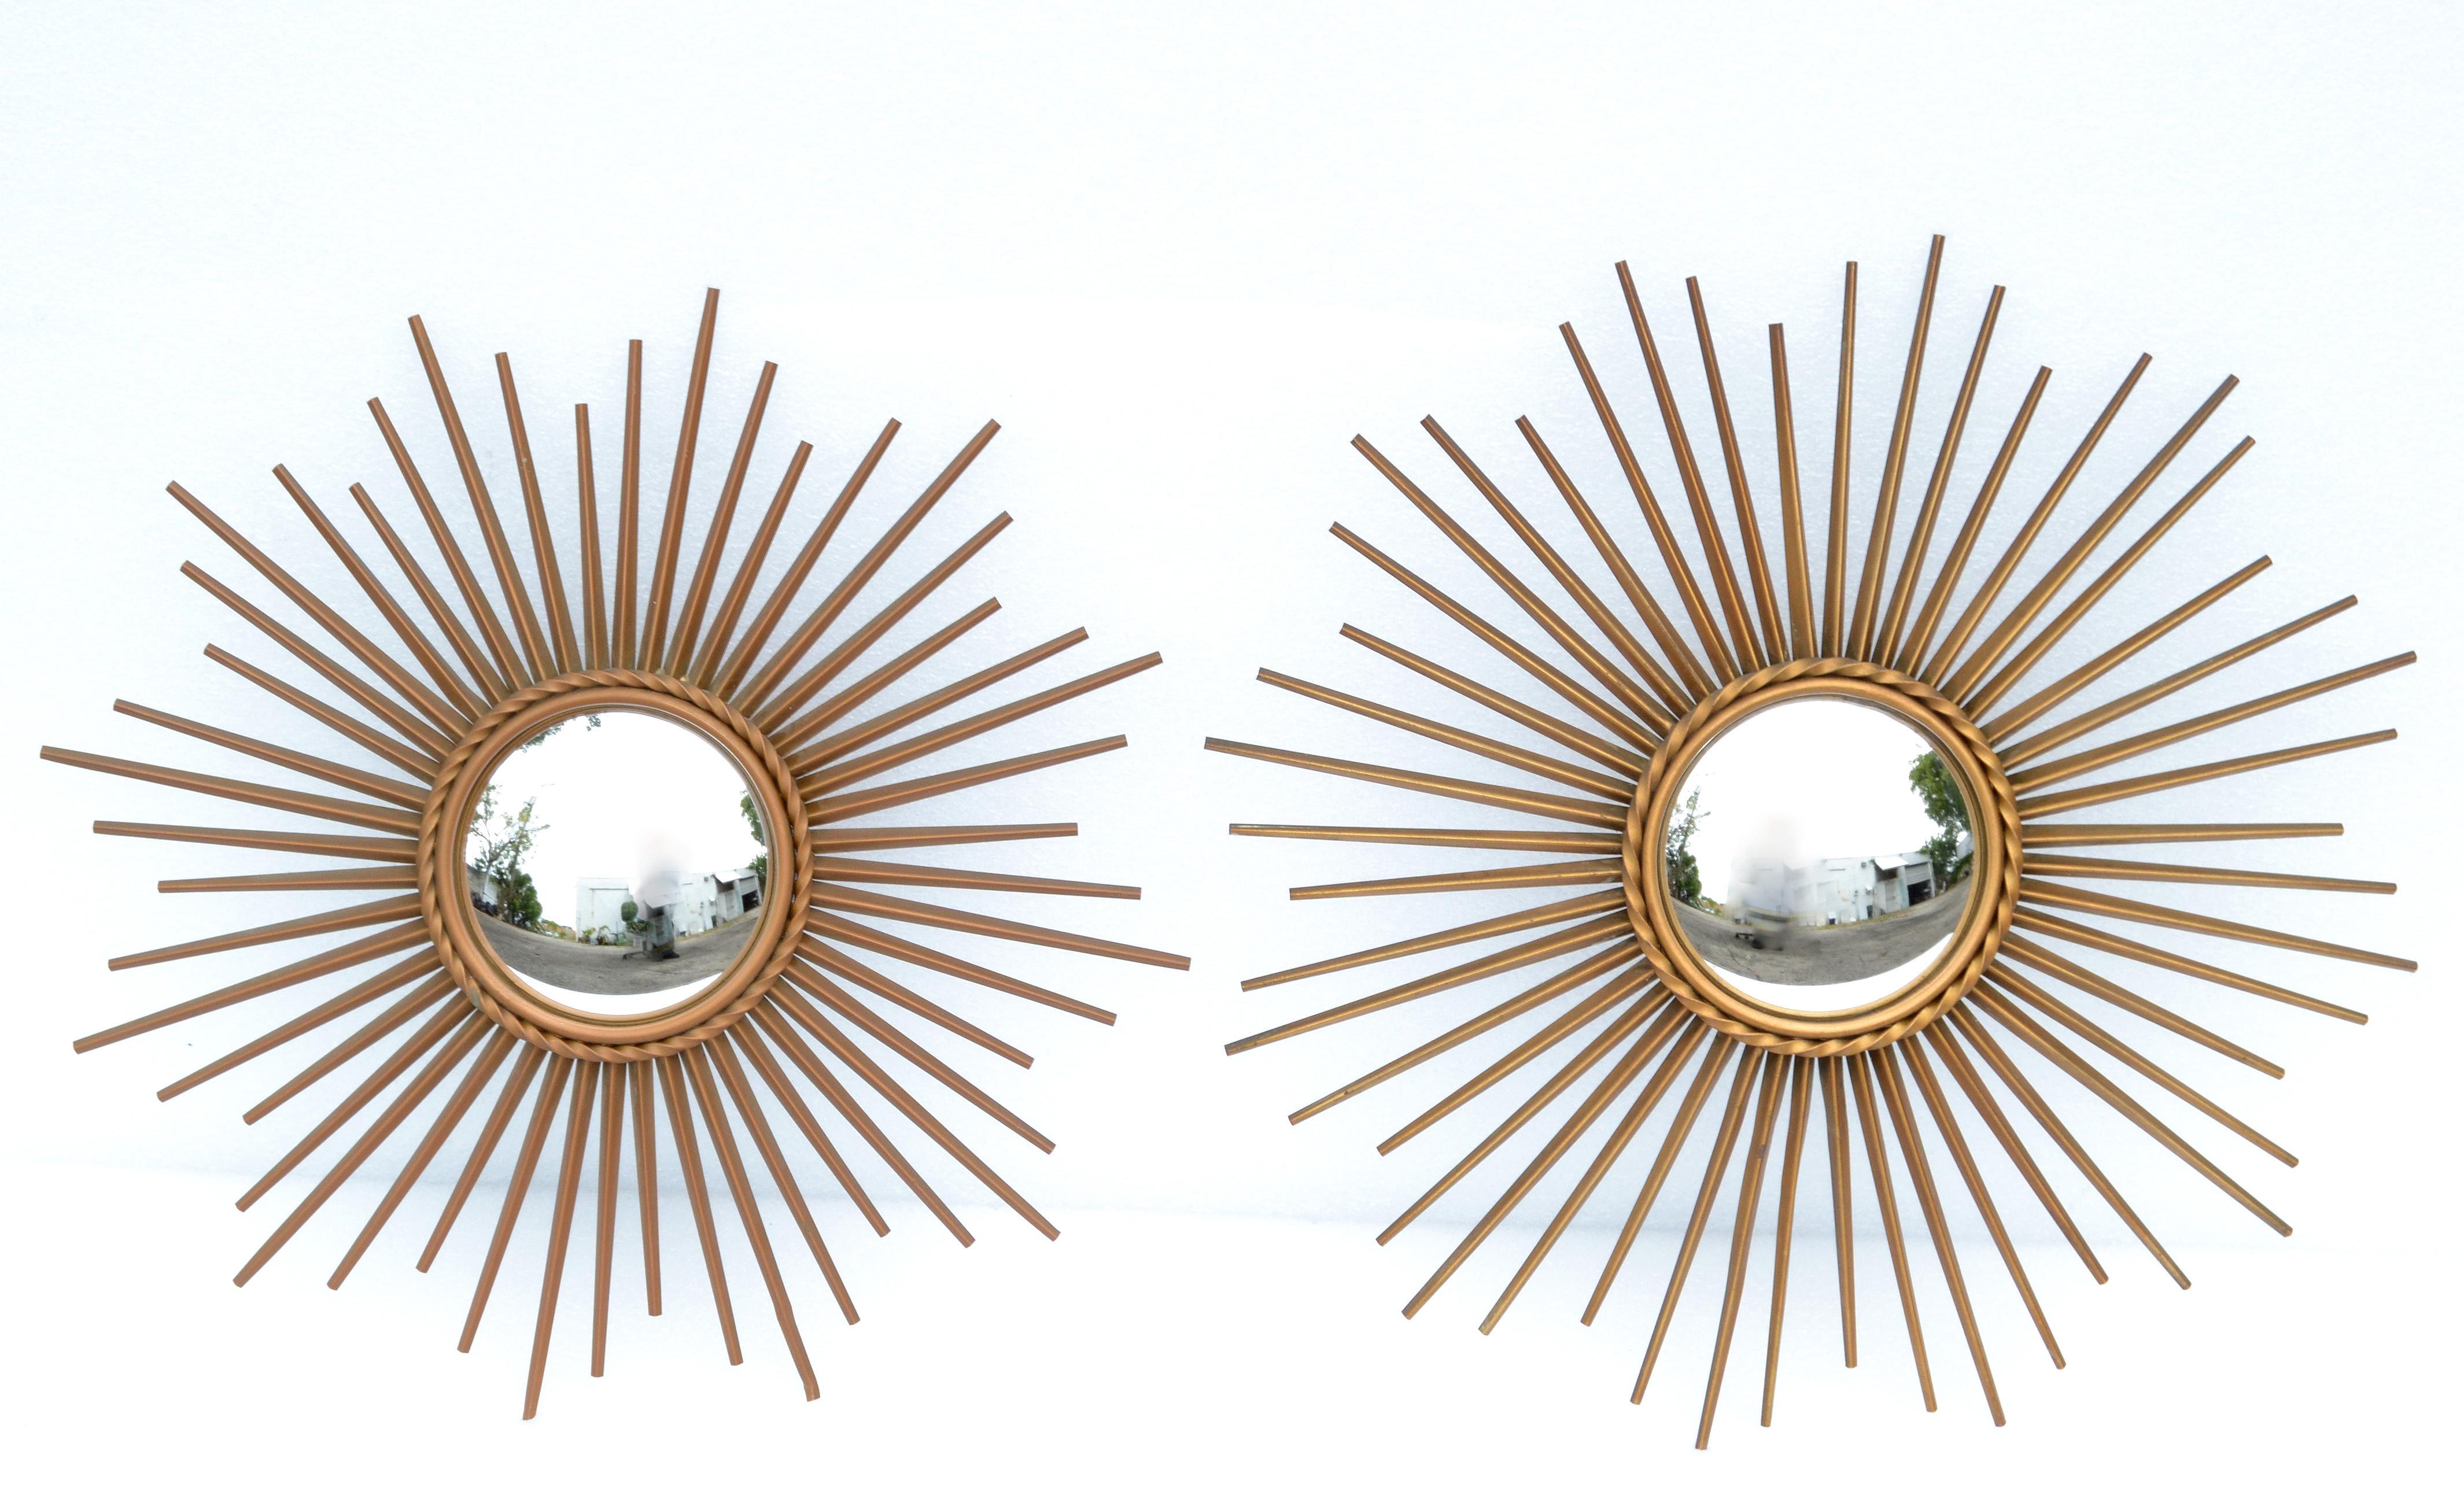 Deux miroirs convexes de 19,5 pouces de diamètre, de Chaty Vallauris, fabriqués dans les années 1970.
Superbe objet en fer fabriqué à la main et recouvert d'une finition en laiton, avec un miroir convexe de 5,5 pouces au centre.
Fabriqué à